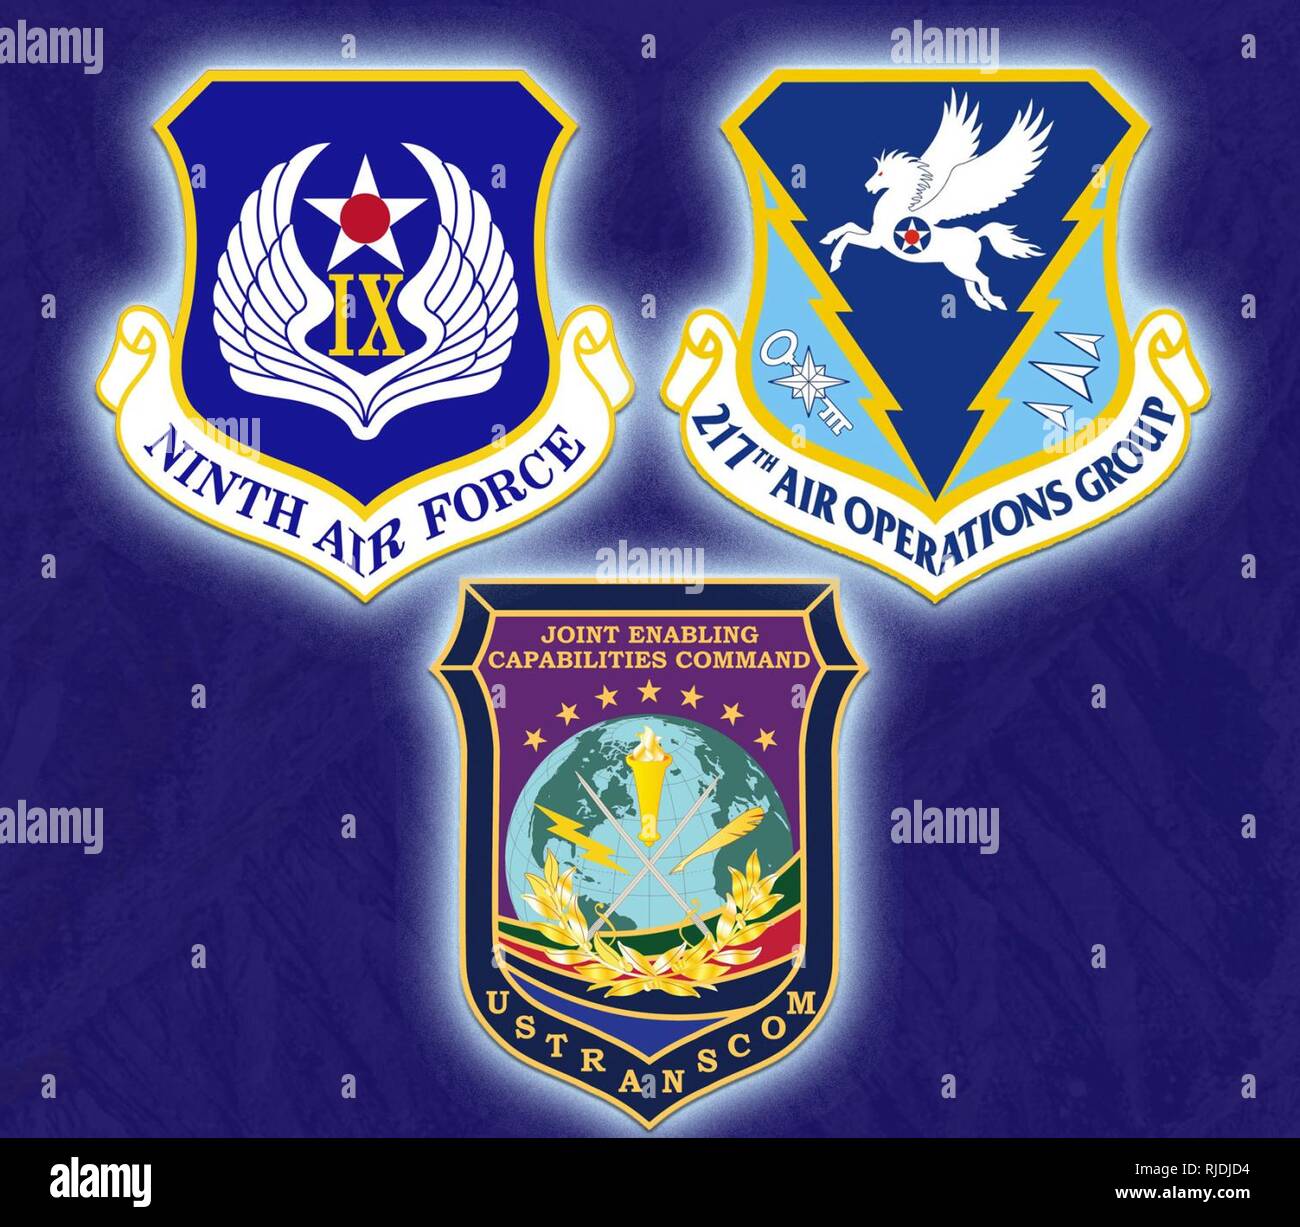 Le personnel de la Ninth Air Force a participé à l'exercice personnel (STAFFEX) 18-2 dans le cadre de la feuille de route pour devenir une force opérationnelle interarmées (FOI) capable de l'administration centrale, du 16 au 19 janvier, 2018, Shaw Air Force Base, L.C. (l'exercice a été un effort de collaboration entre 9e AF, l'activation des conjoints (Commande JECC) à partir de la base navale de Norfolk, Virginie, et la garde nationale de l'air avec le 217e groupe d'opérations aériennes de Battle Creek, au Michigan. Banque D'Images